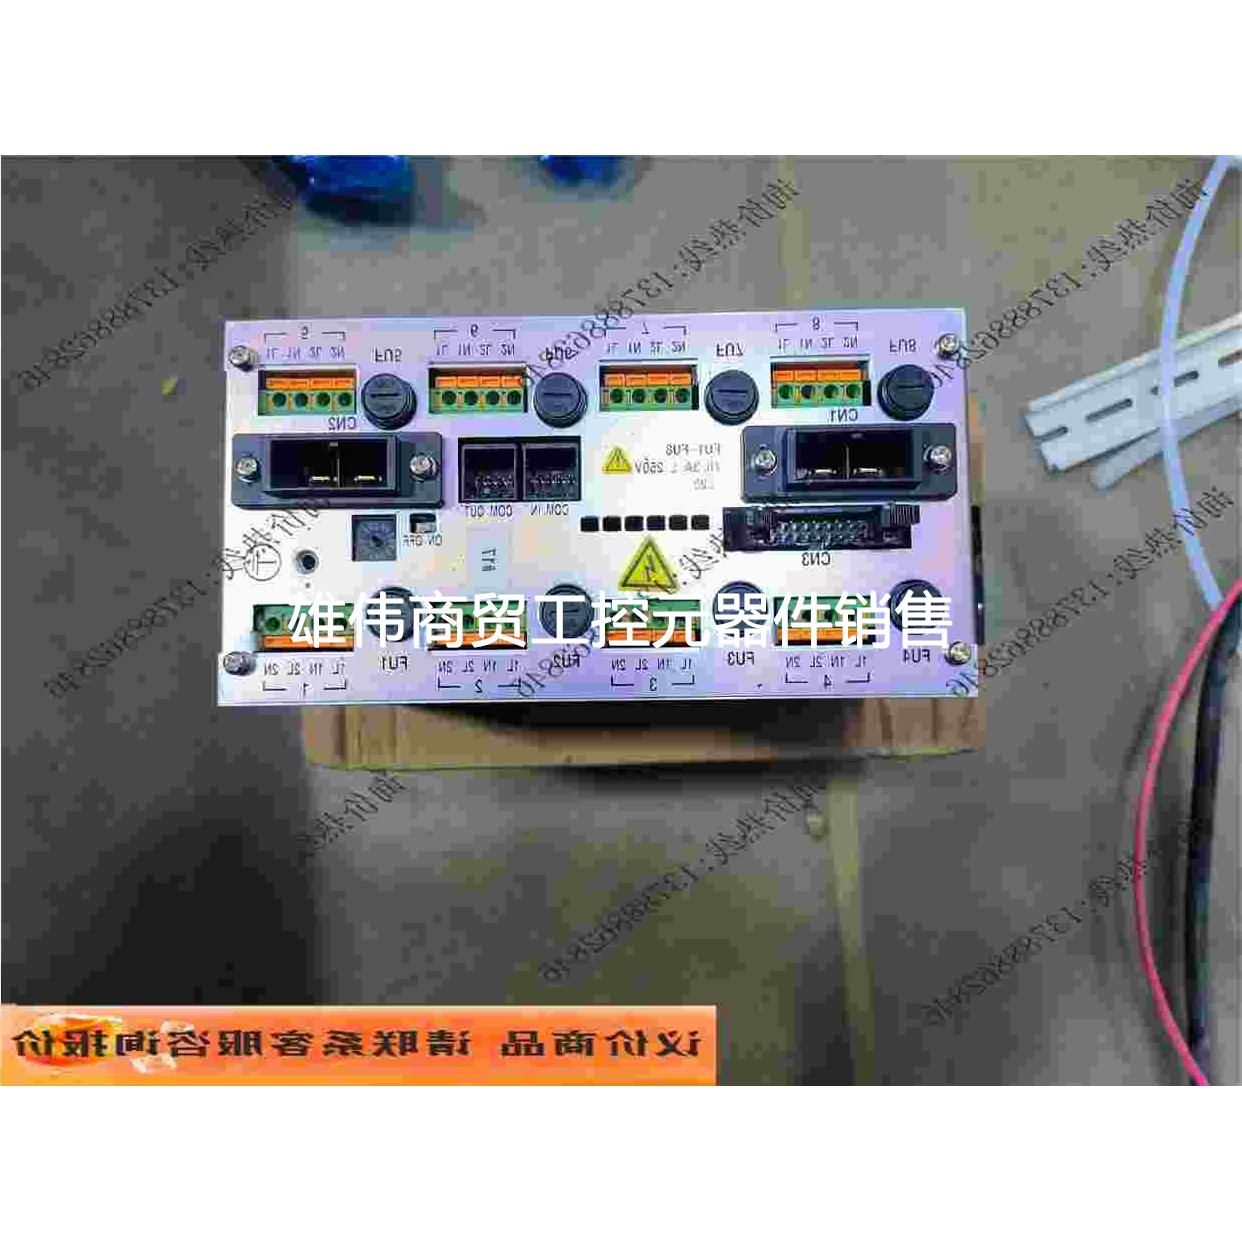 议价CVM-10-5B RKC控制器西启电器实物拍议价